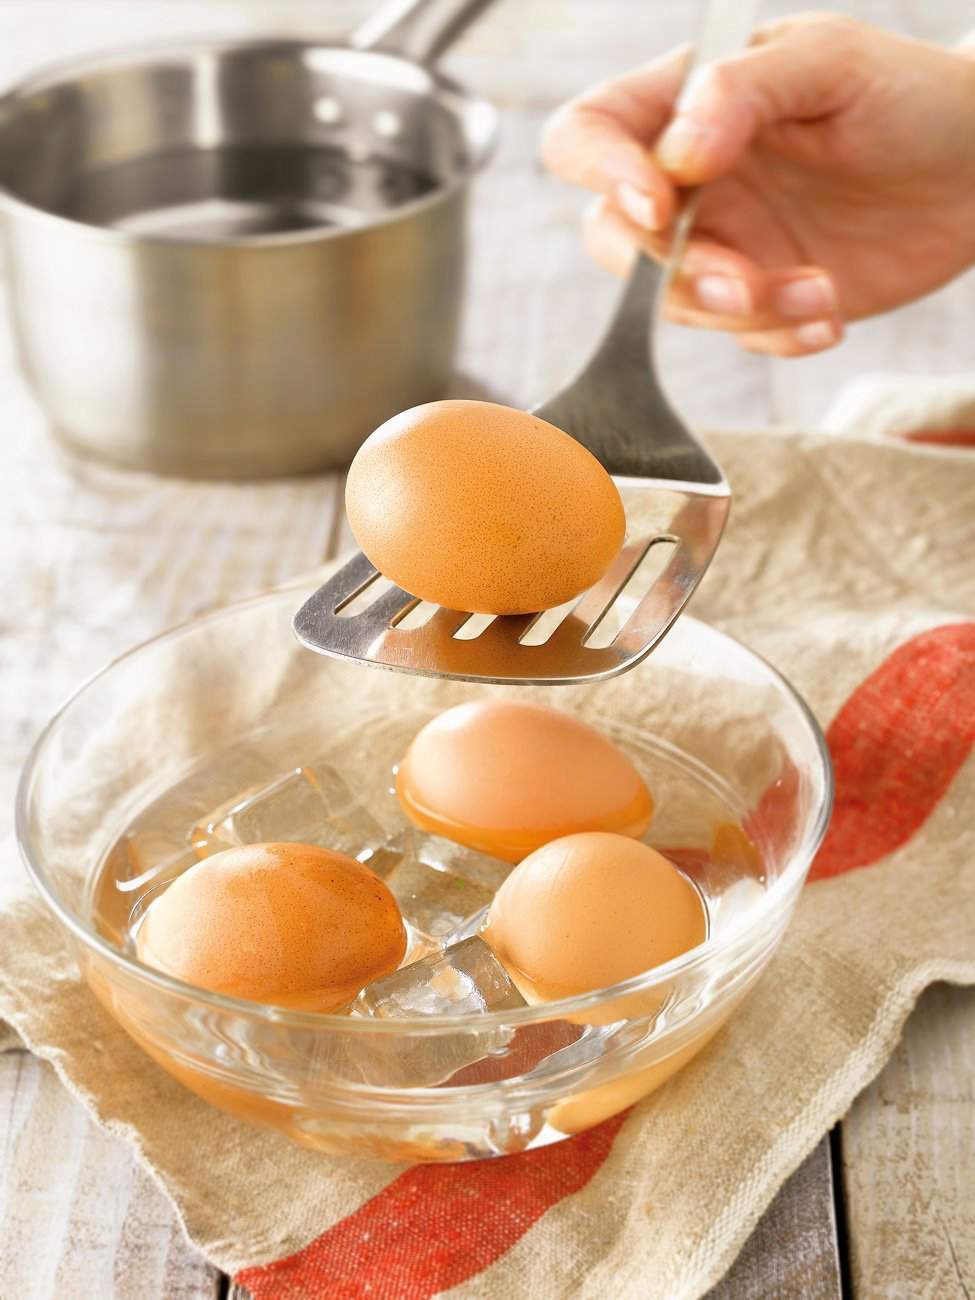 2. Cuece los huevos